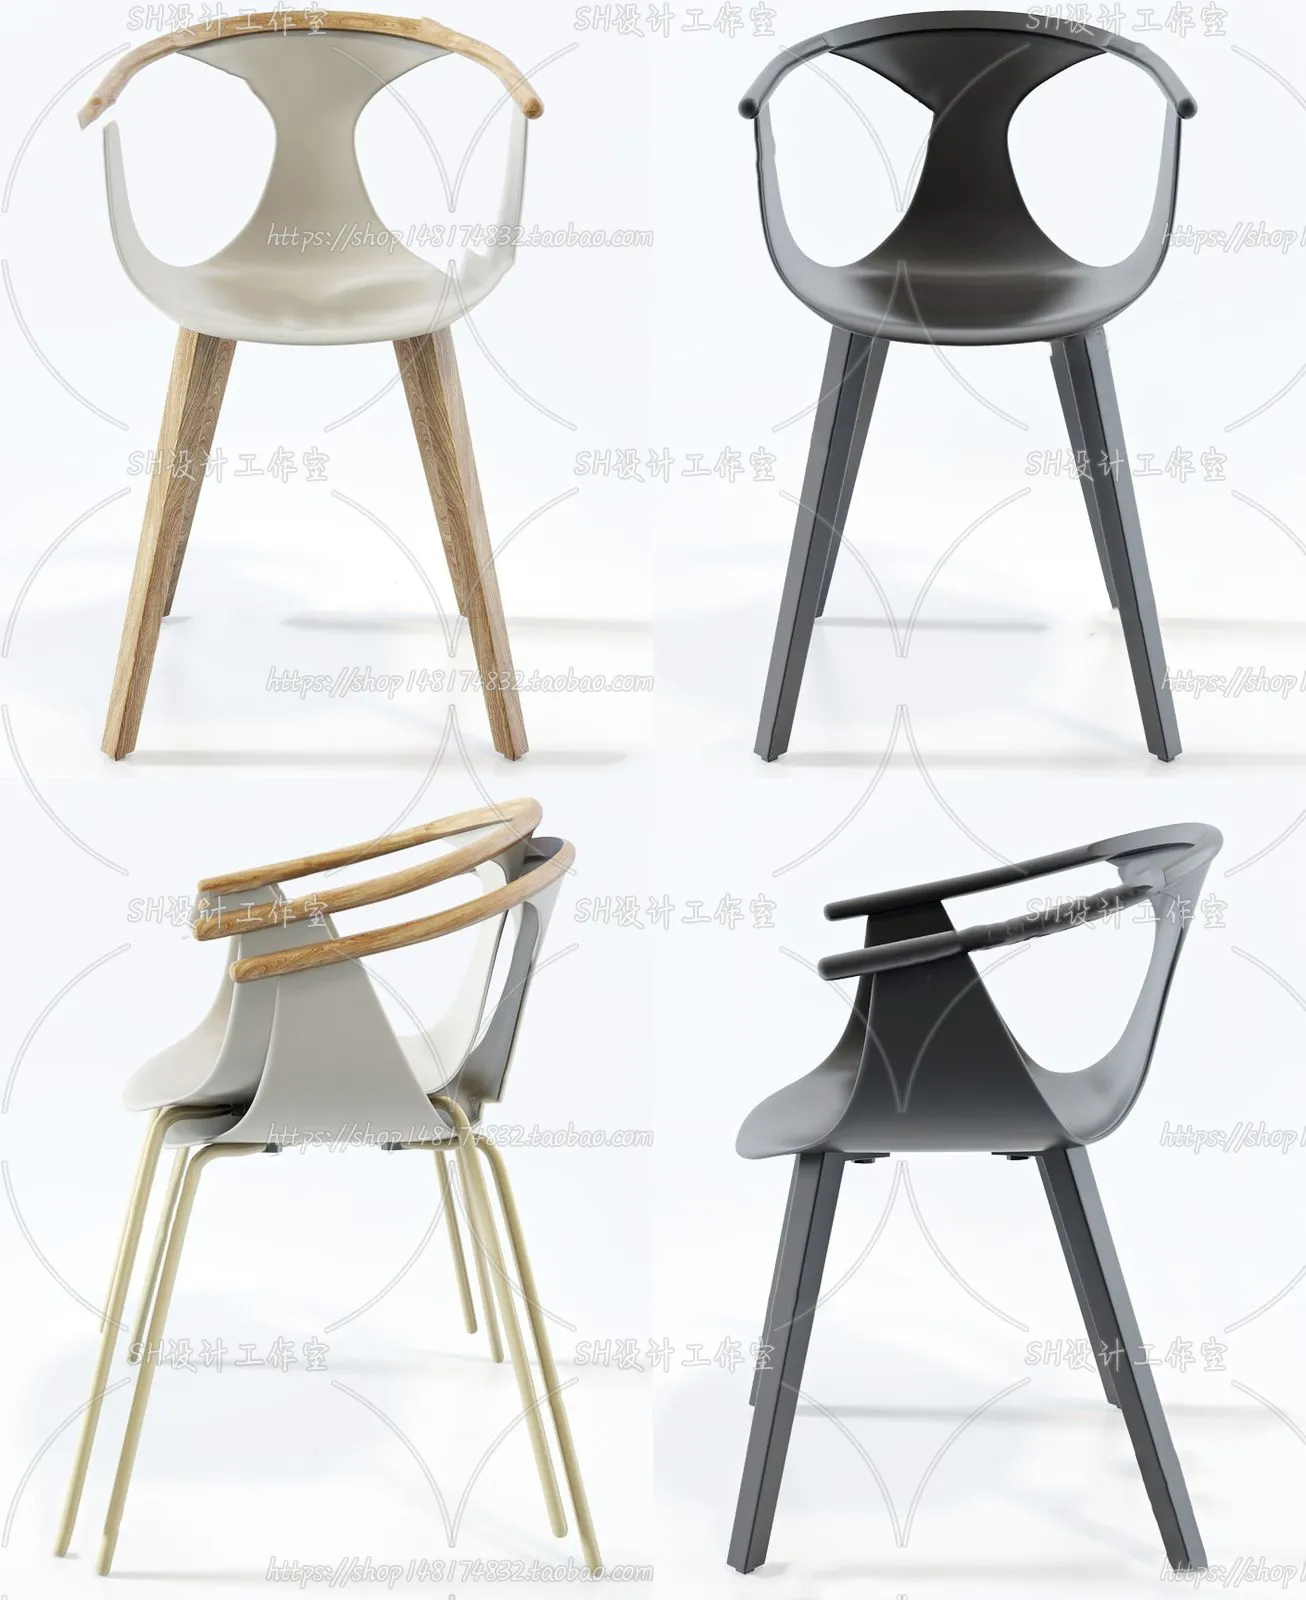 Chair – Single Chair 3D Models – 2015